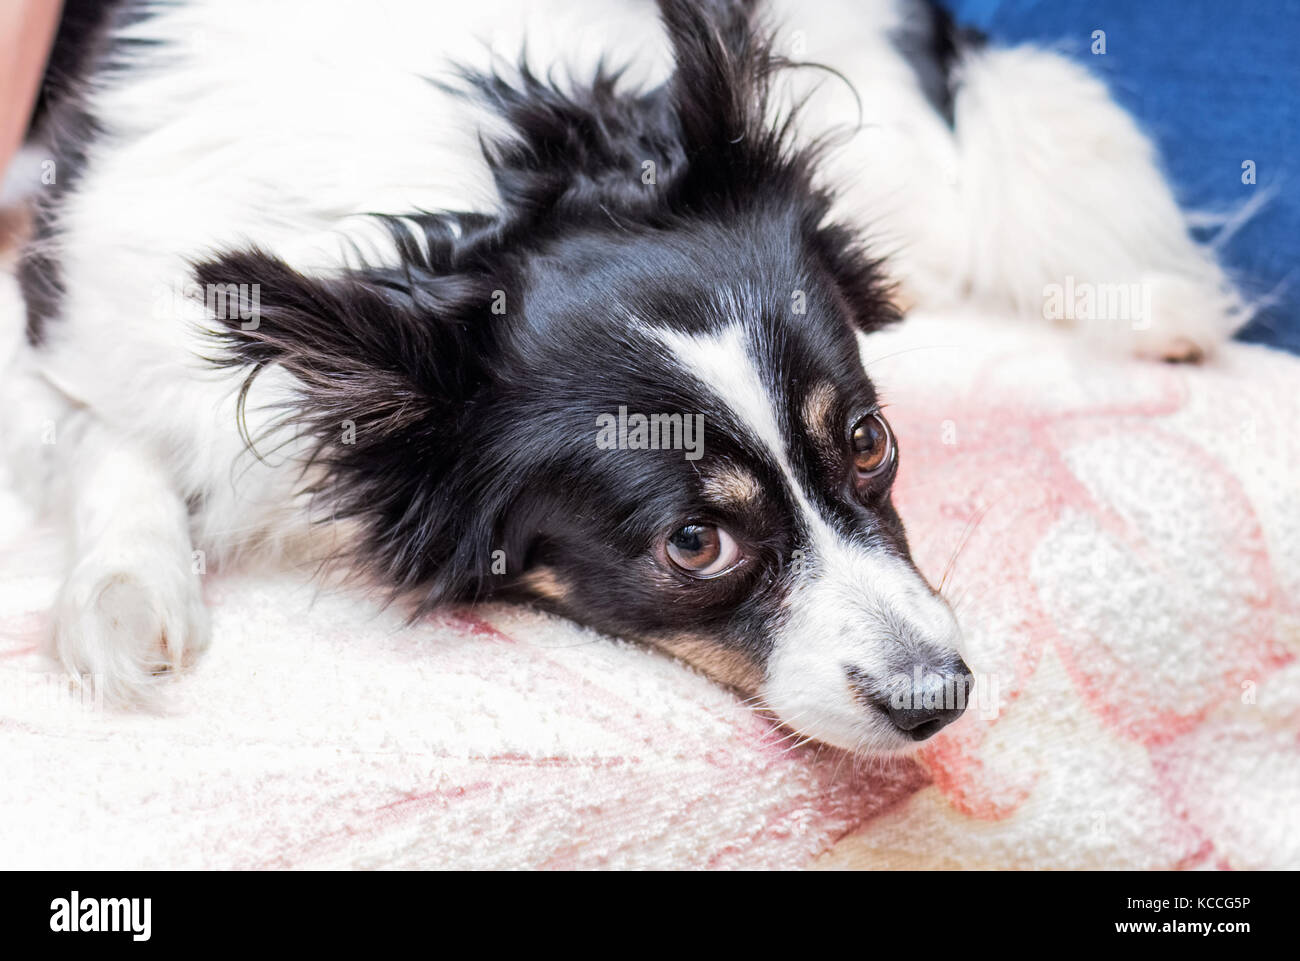 Abbastanza adulto in bianco e nero cane con occhi marroni guarda pietosamente Foto Stock